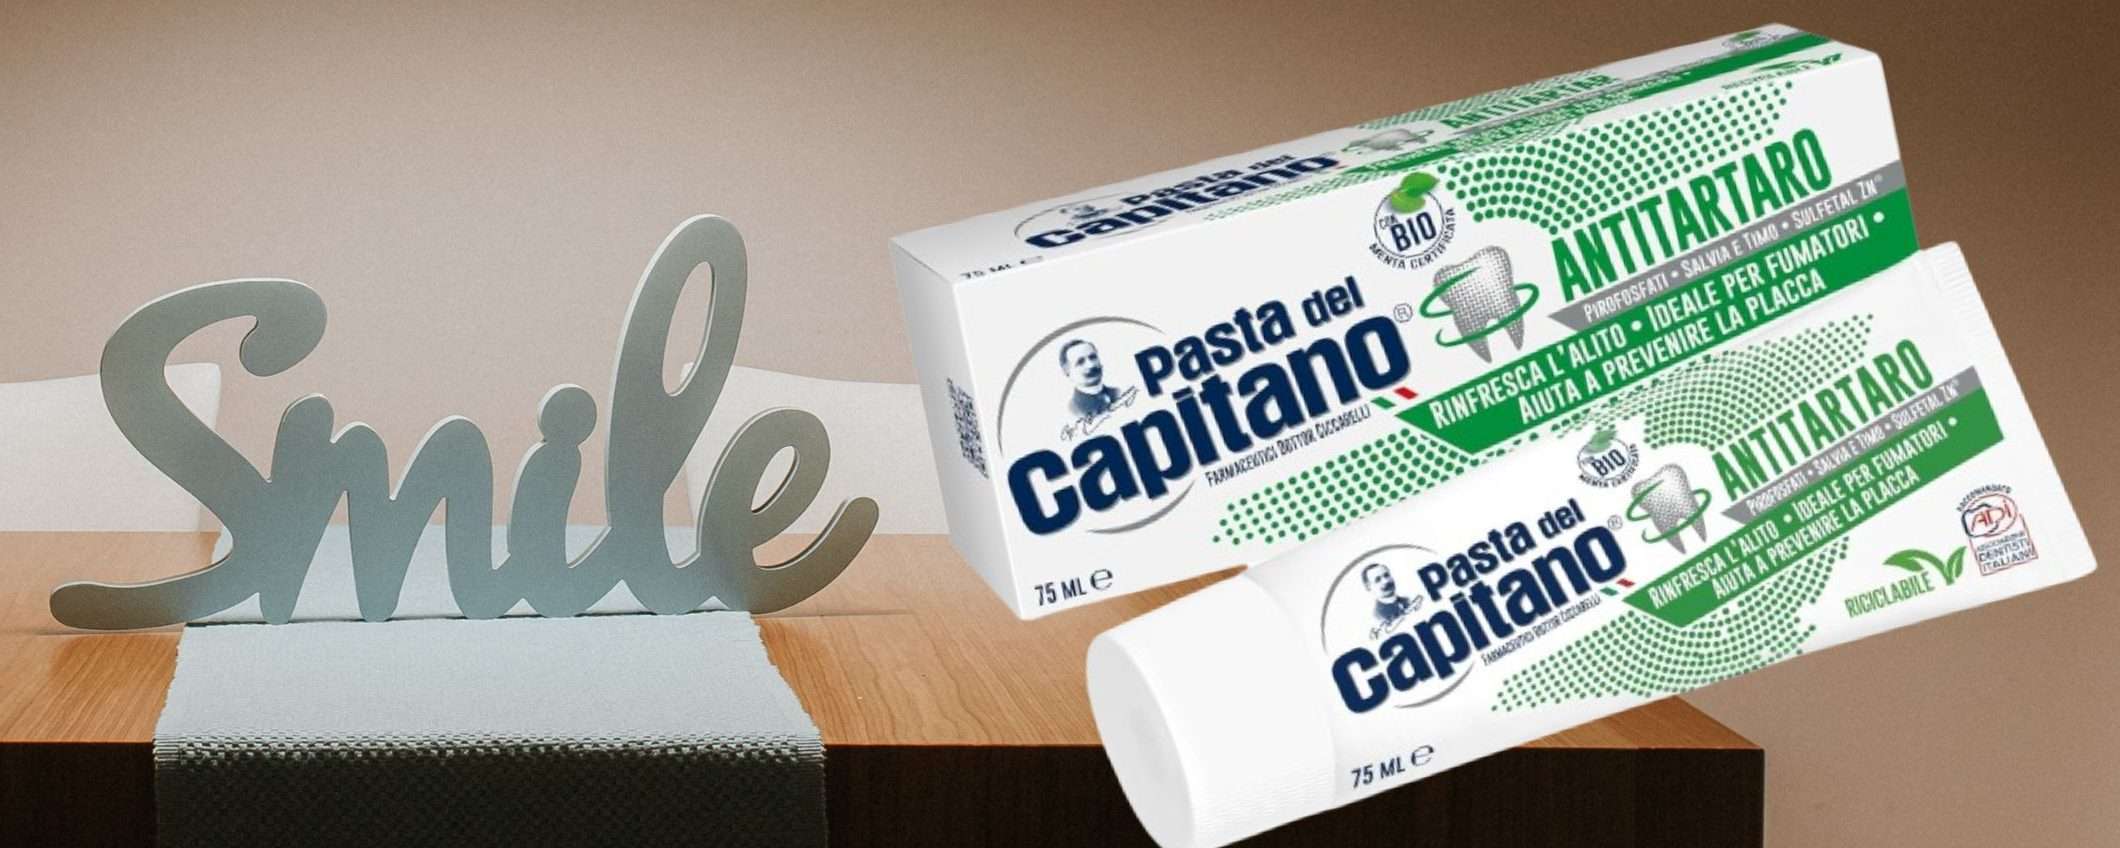 Pasta del capitano, SCONTO 56% su Amazon: dentifricio antitartaro a 0,81€